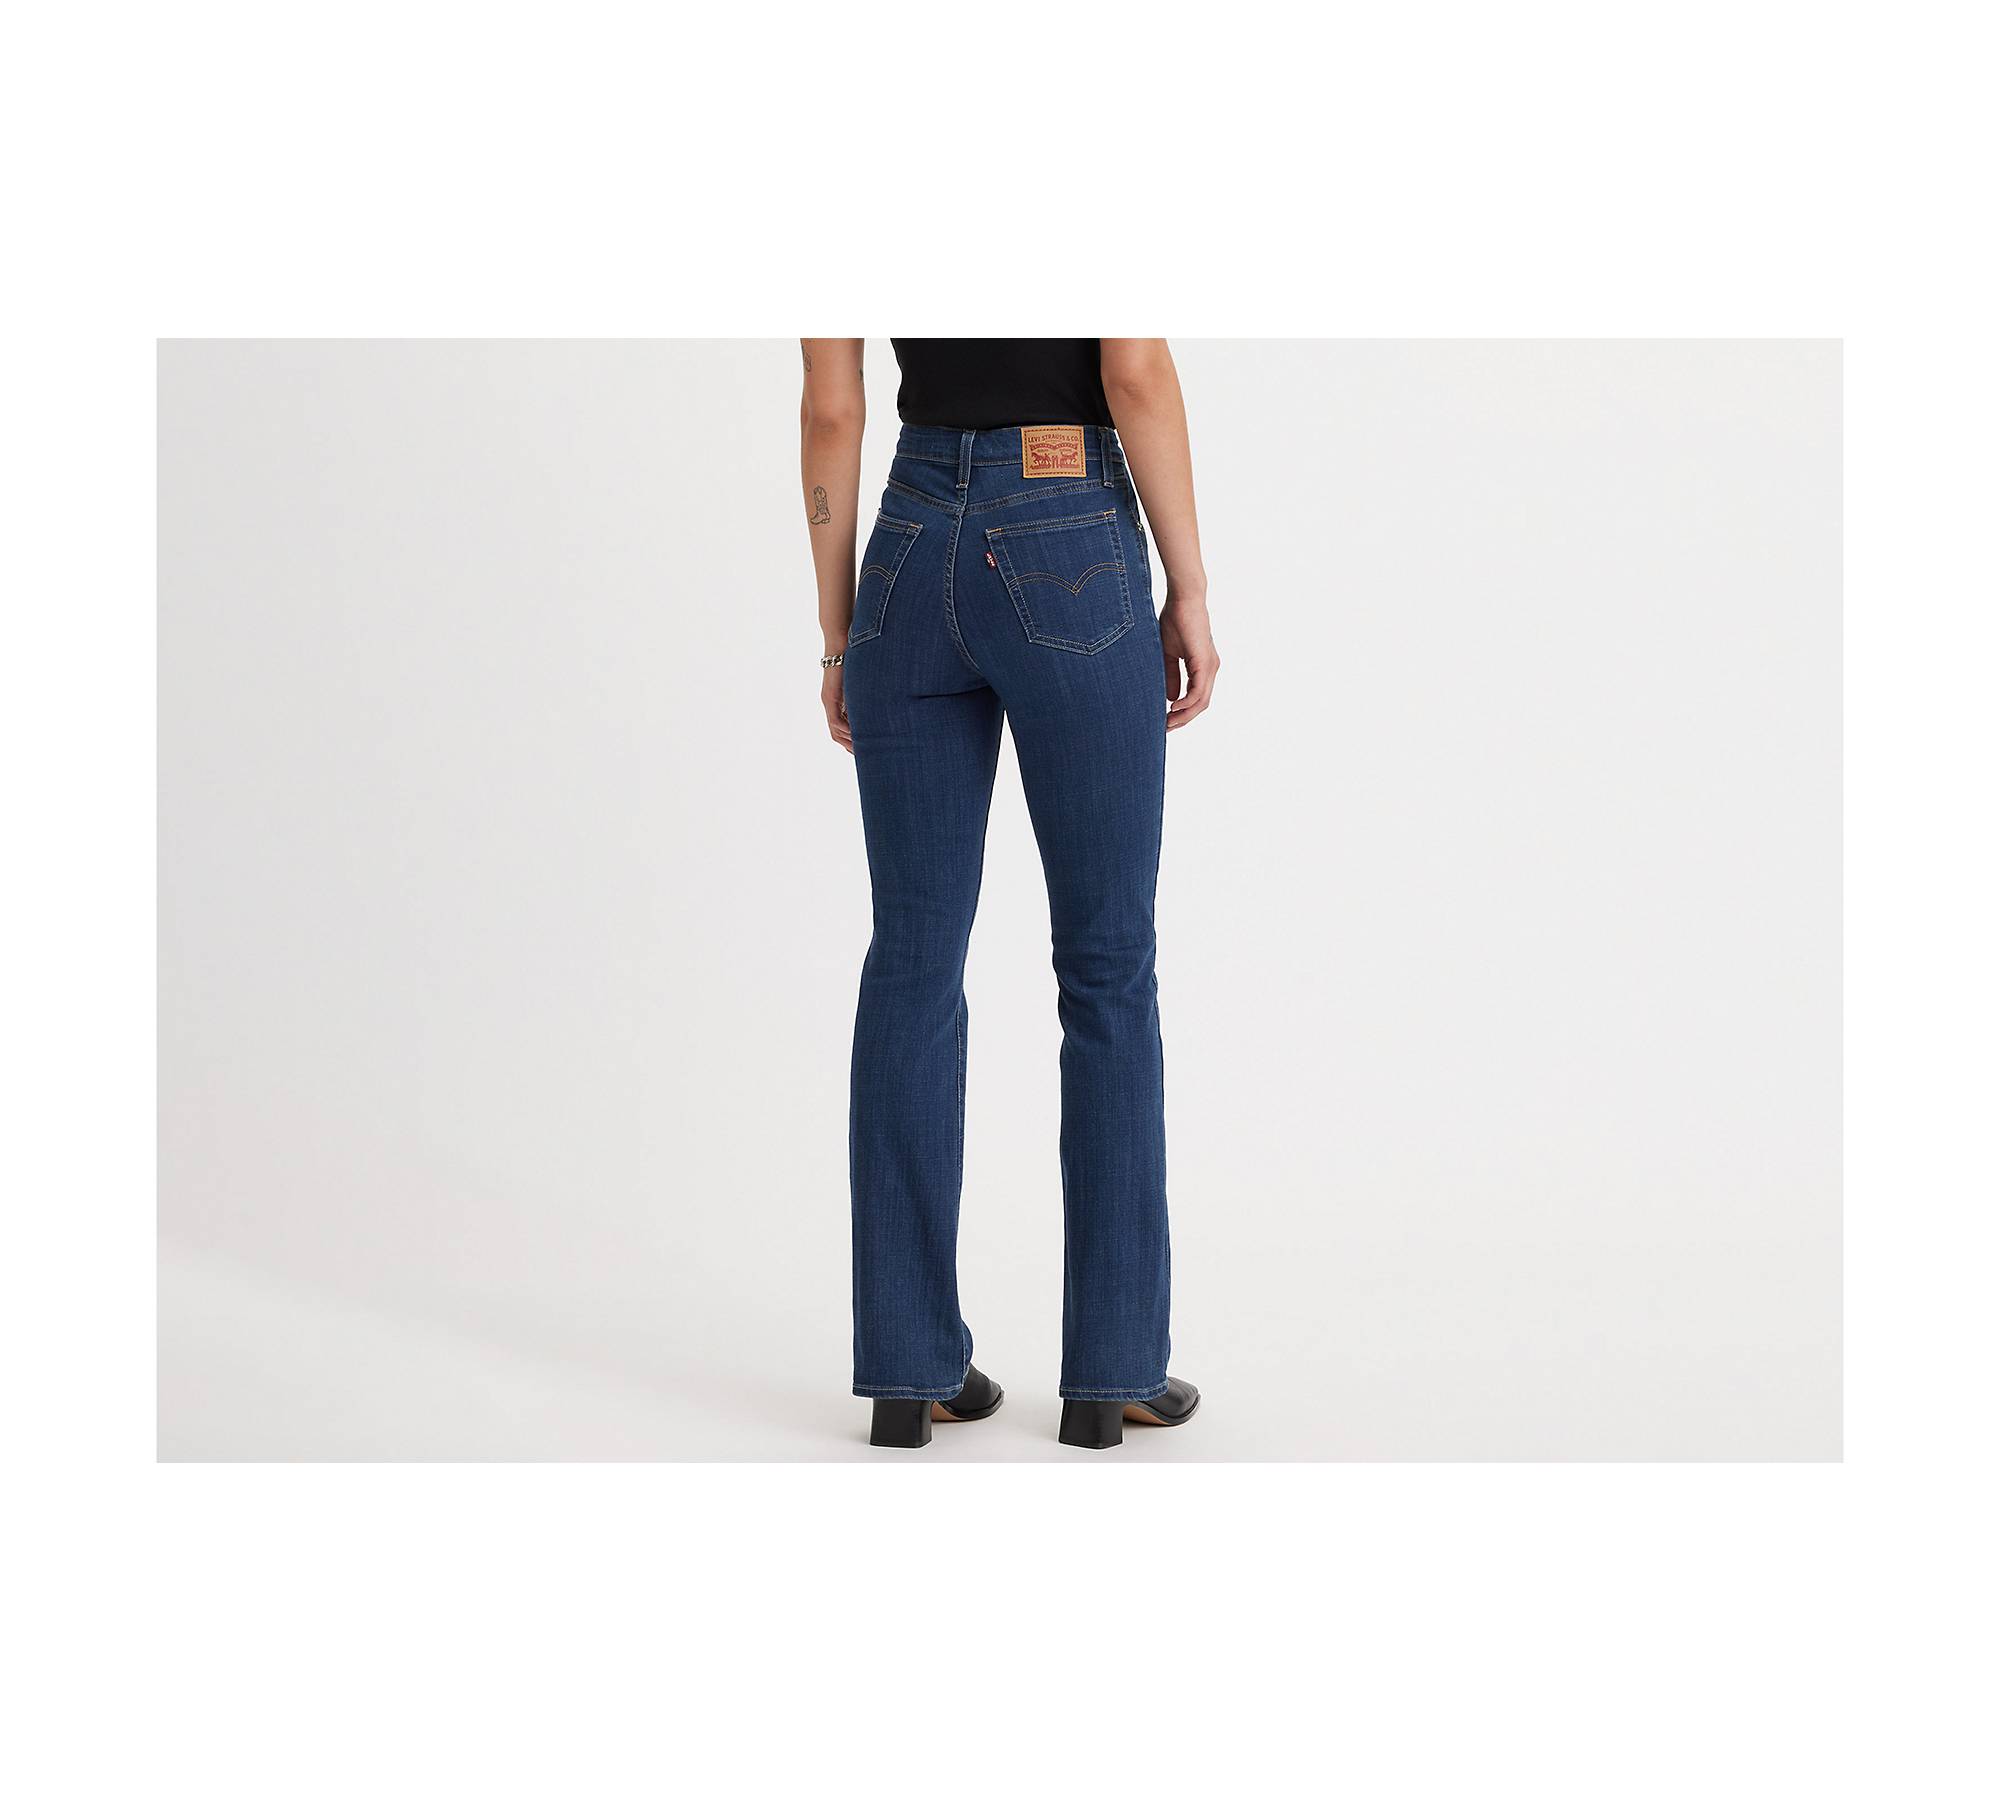 Levis Womens 725 High Rise Bootcut Jeans Standard 27 Regular Tribeca Sun  Waterless 